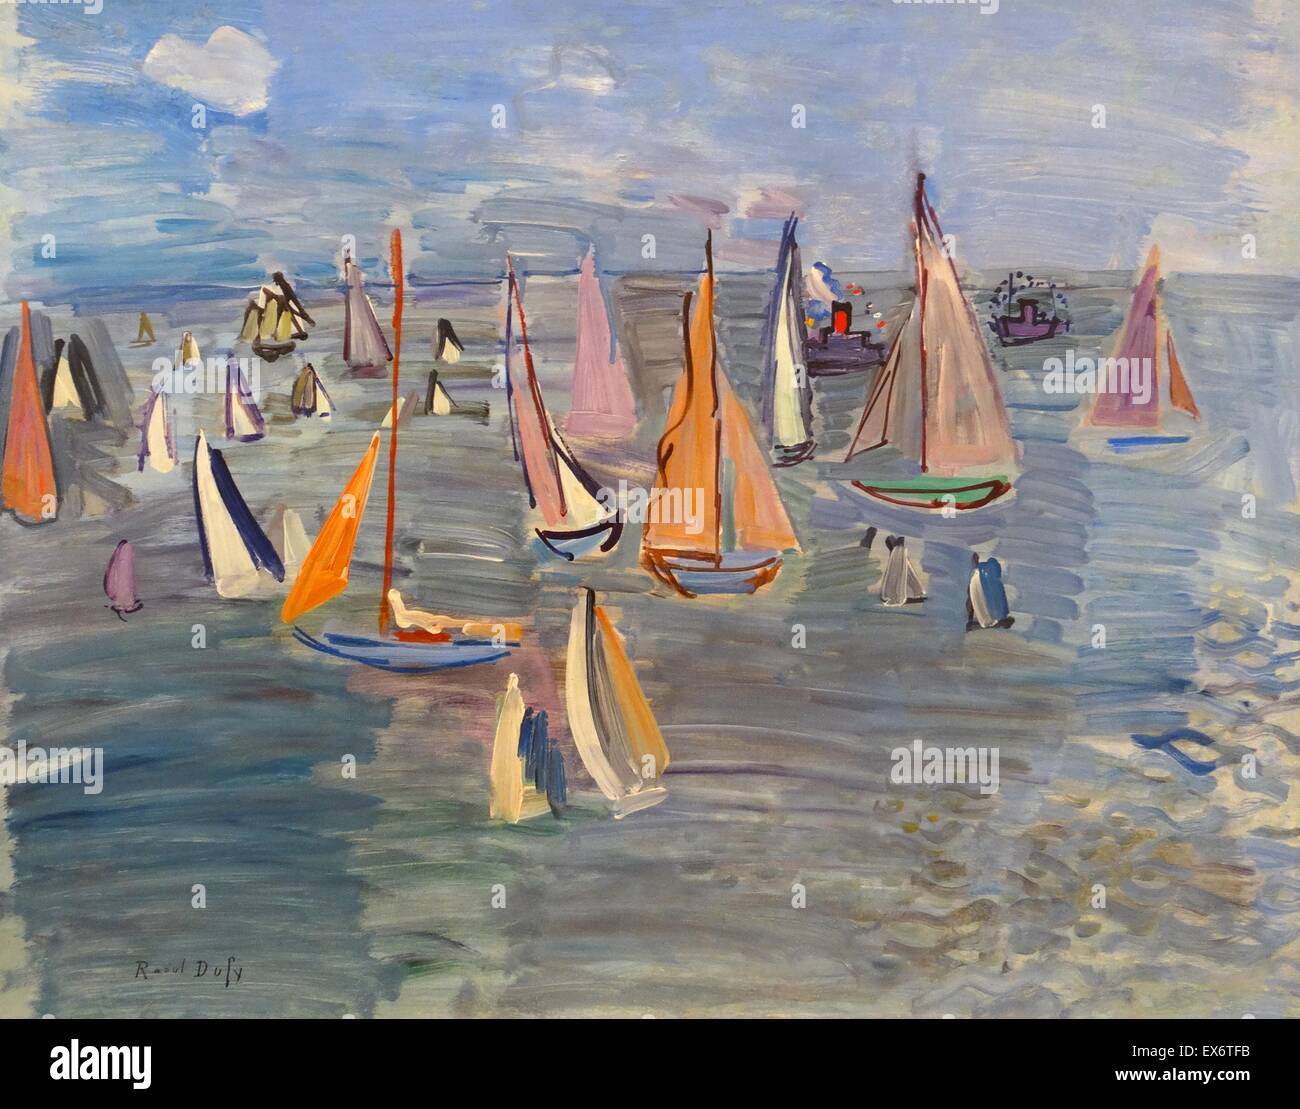 Régates par Raoul Dufy (1877-1953). Huile sur toile, 1935. Dufy était un peintre fauviste français qui a mis au point un style décoratif coloré, qui est rapidement devenue à la mode. Banque D'Images